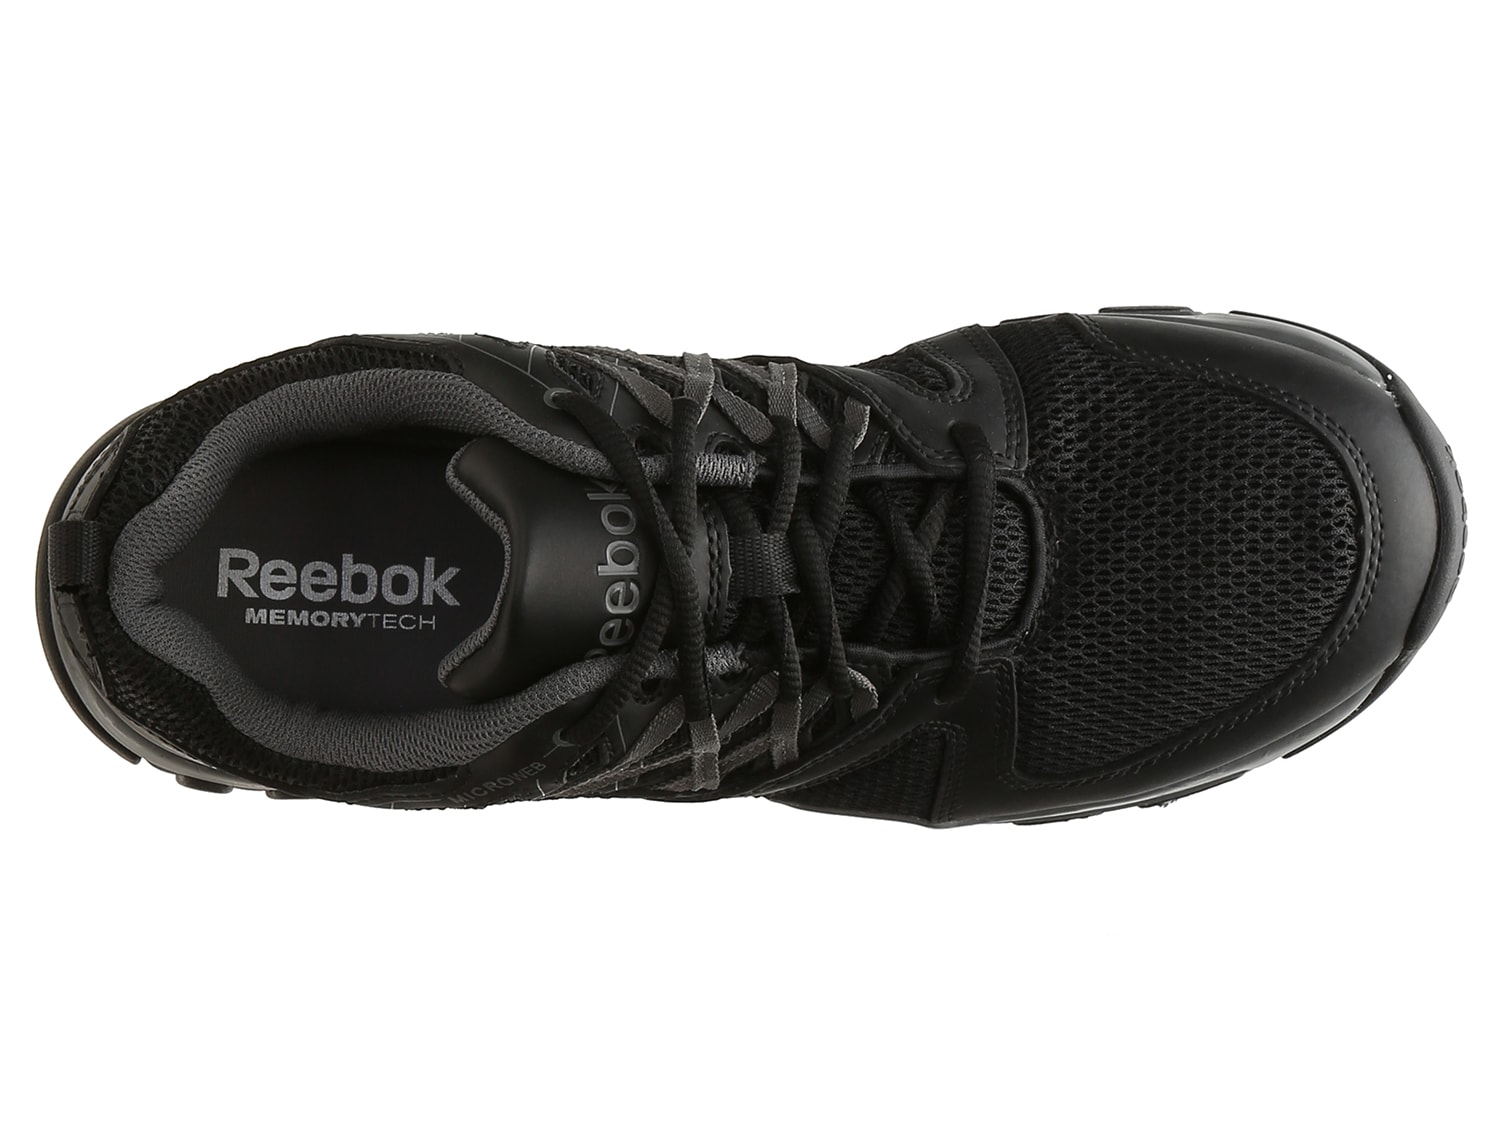 reebok steel toe tennis shoes